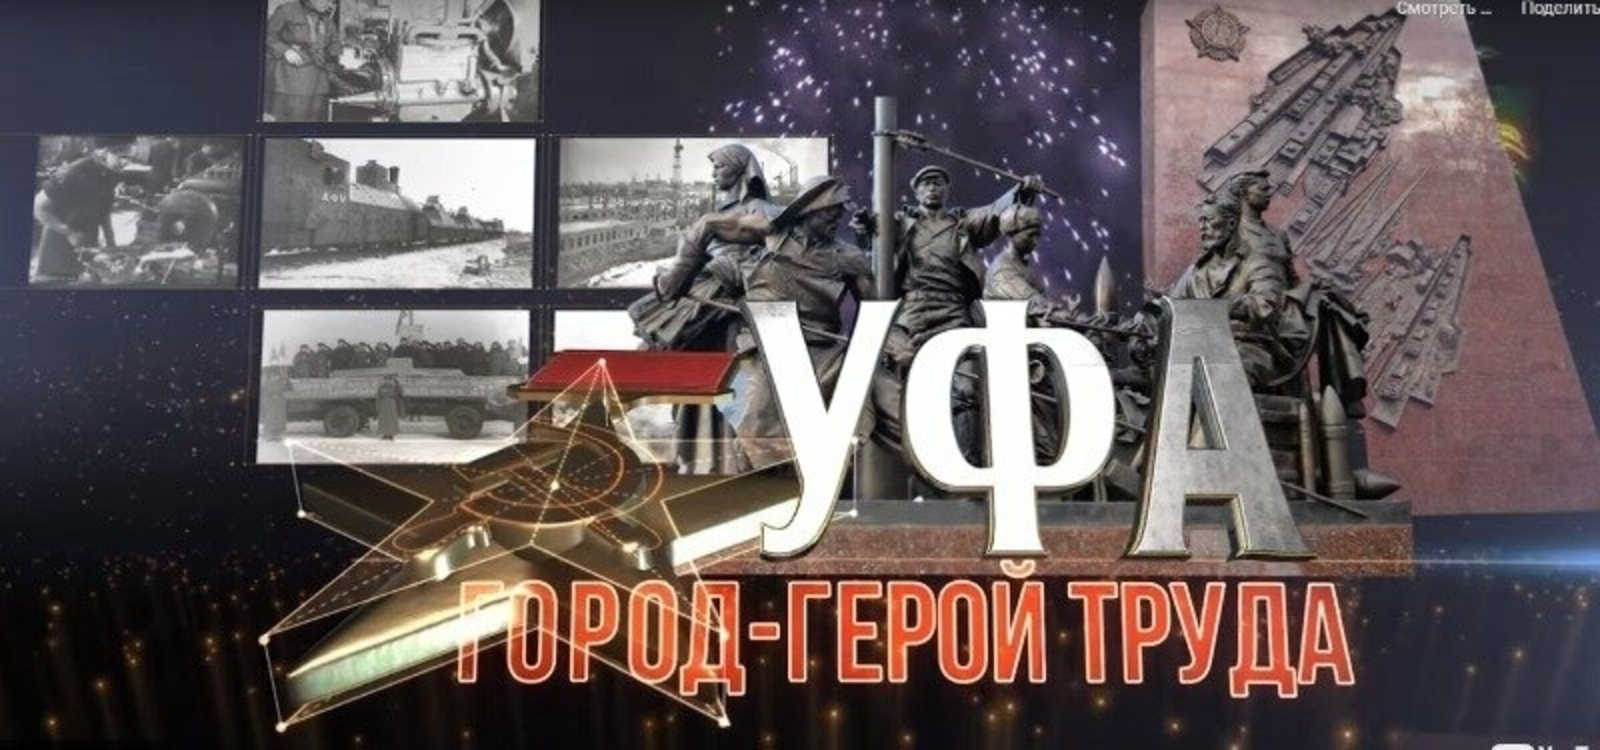 Завтра, 18 ноября, жители Башкирии увидят премьеру фильма «Уфа - город-герой труда»